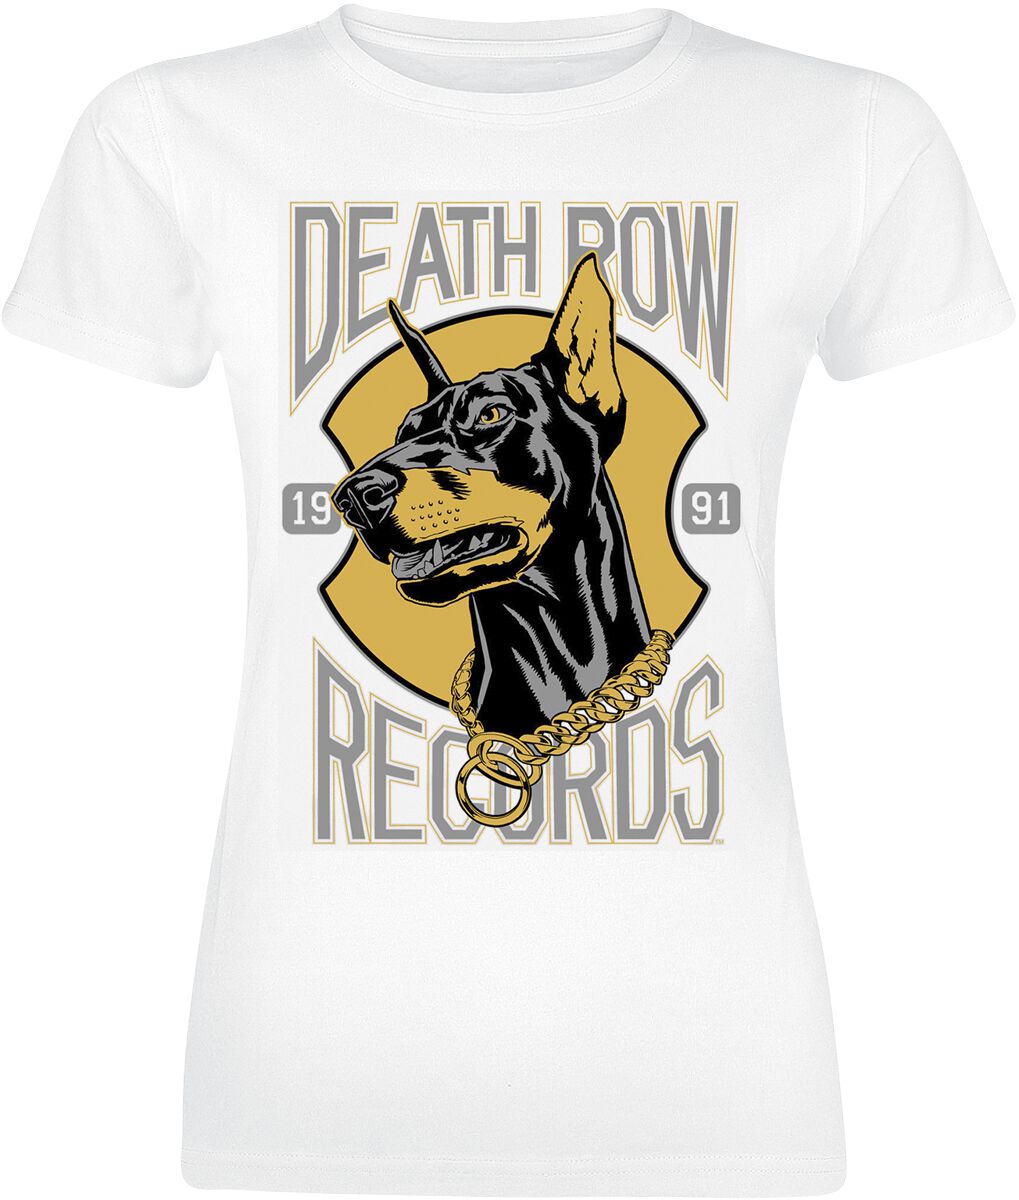 Death Row Records T-Shirt - Dog Logo - S bis XL - für Damen - Größe S - weiß  - Lizenziertes Merchandise!